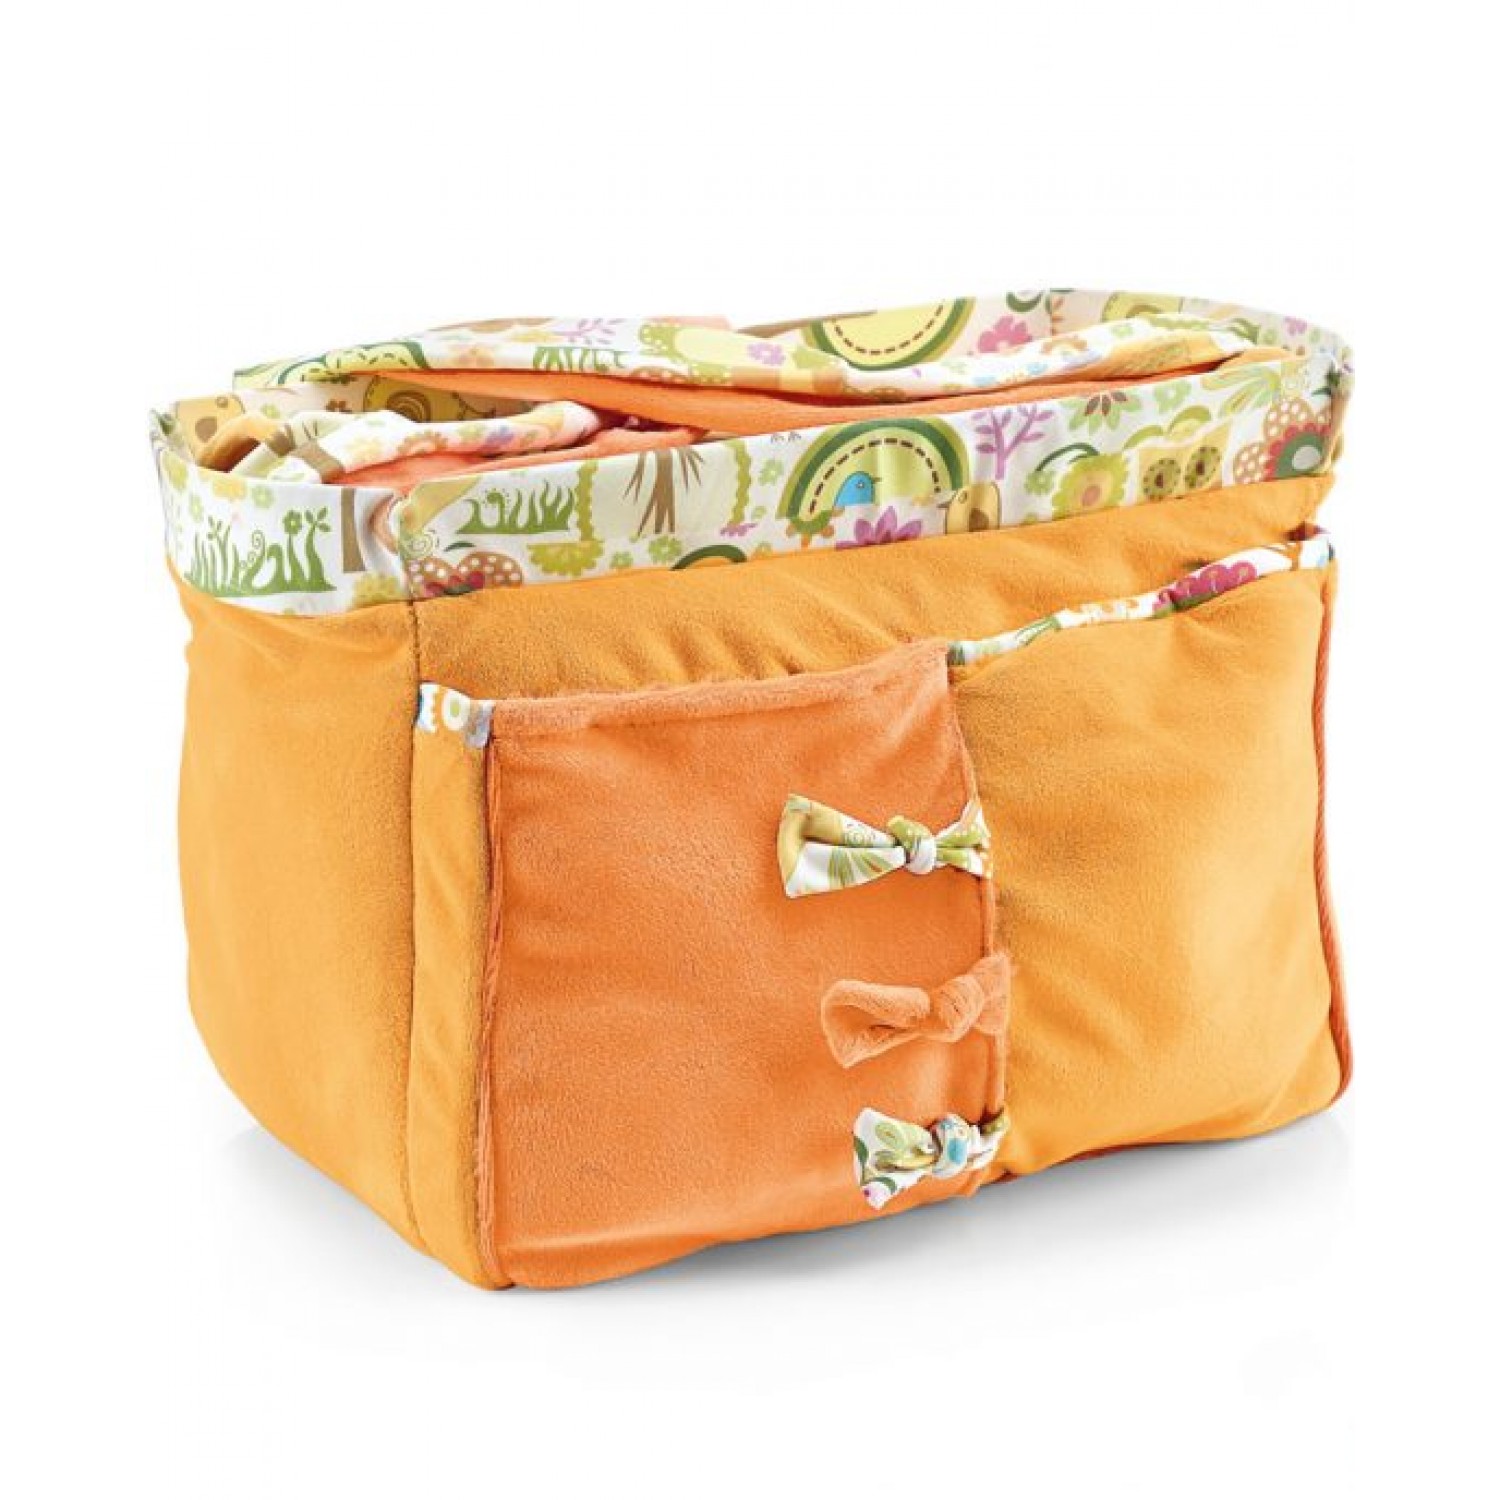 Brevi 226 – 011 slex Evo Bedchair Bag Organizer Orange von Brevi